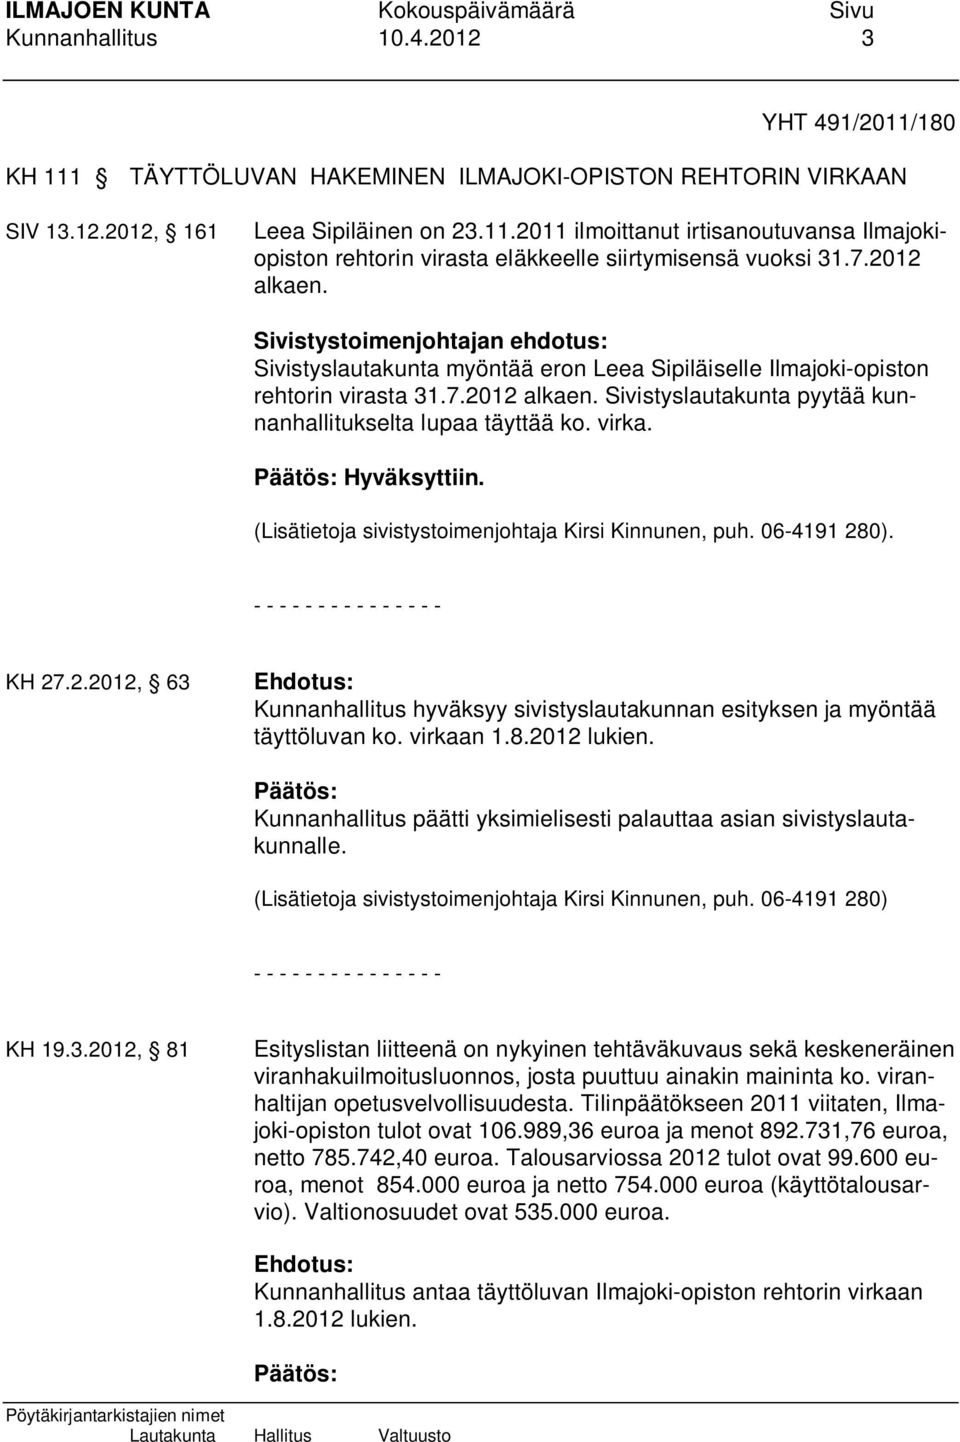 virka. Hyväksyttiin. (Lisätietoja sivistystoimenjohtaja Kirsi Kinnunen, puh. 06-4191 280). - - - - - - - - - - - - - - - KH 27.2.2012, 63 Ehdotus: Kunnanhallitus hyväksyy sivistyslautakunnan esityksen ja myöntää täyttöluvan ko.